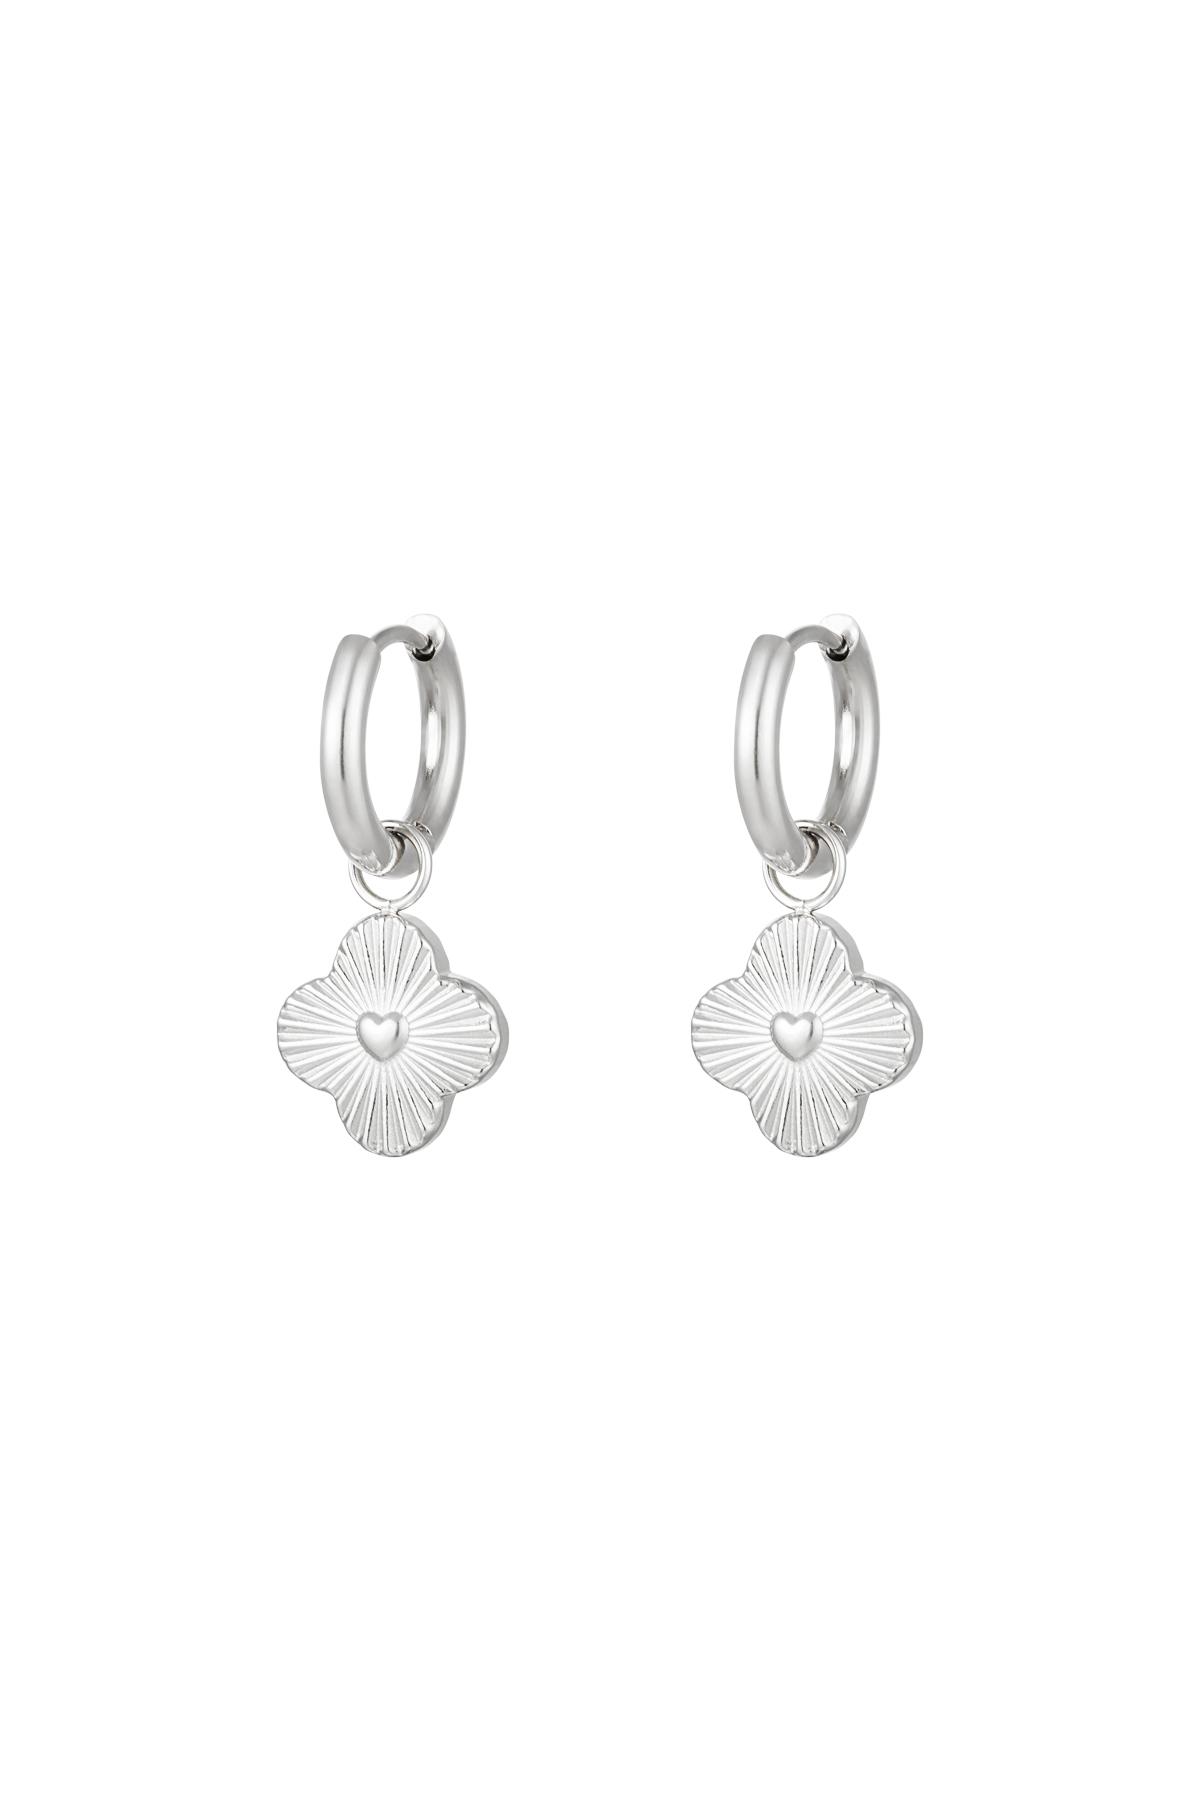 Heart flower earrings Silver Stainless Steel